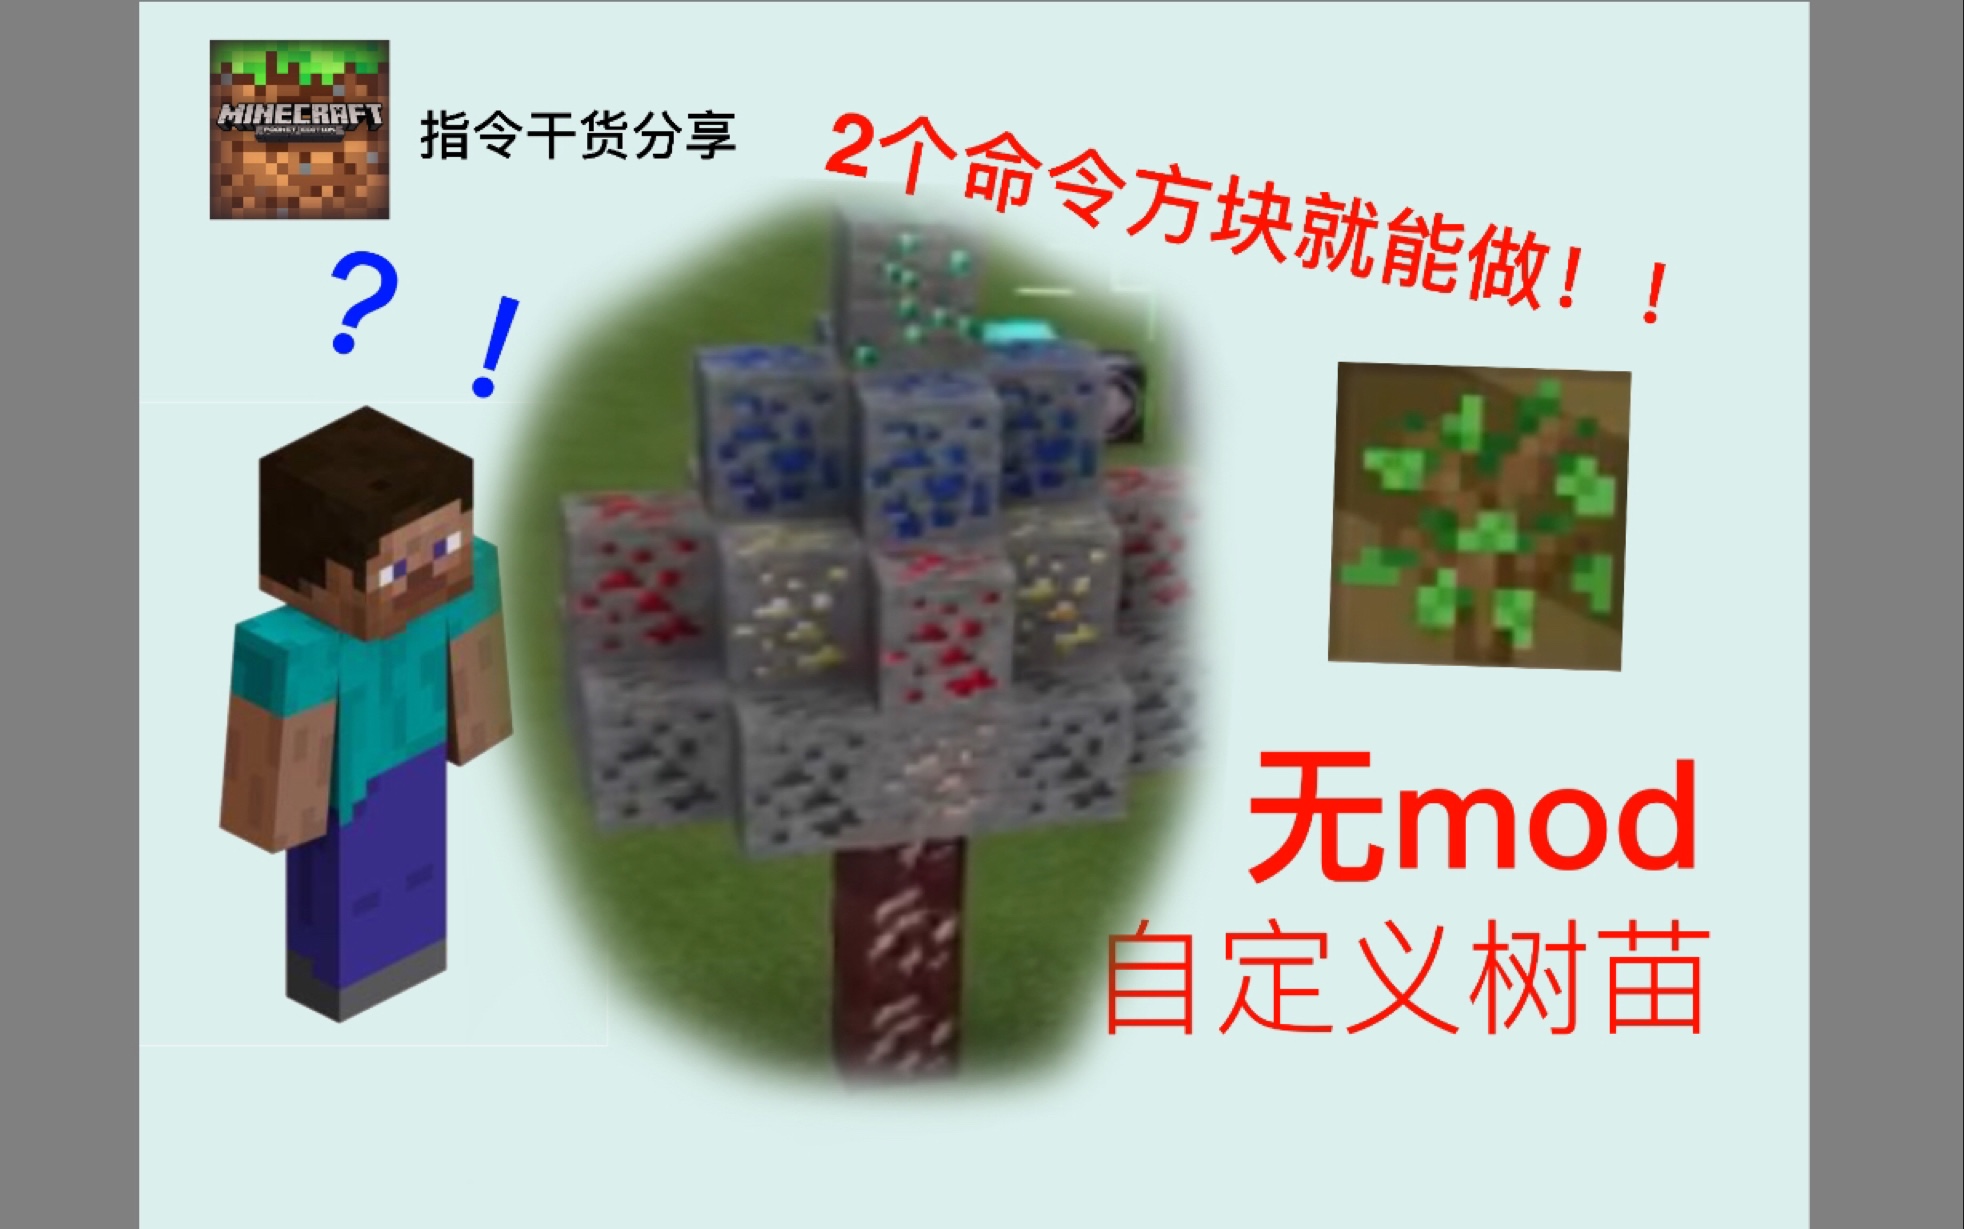 Minecraft 指令干货分享ep15 带你做极简自定义树苗 告别一做就废 哔哩哔哩 つロ干杯 Bilibili